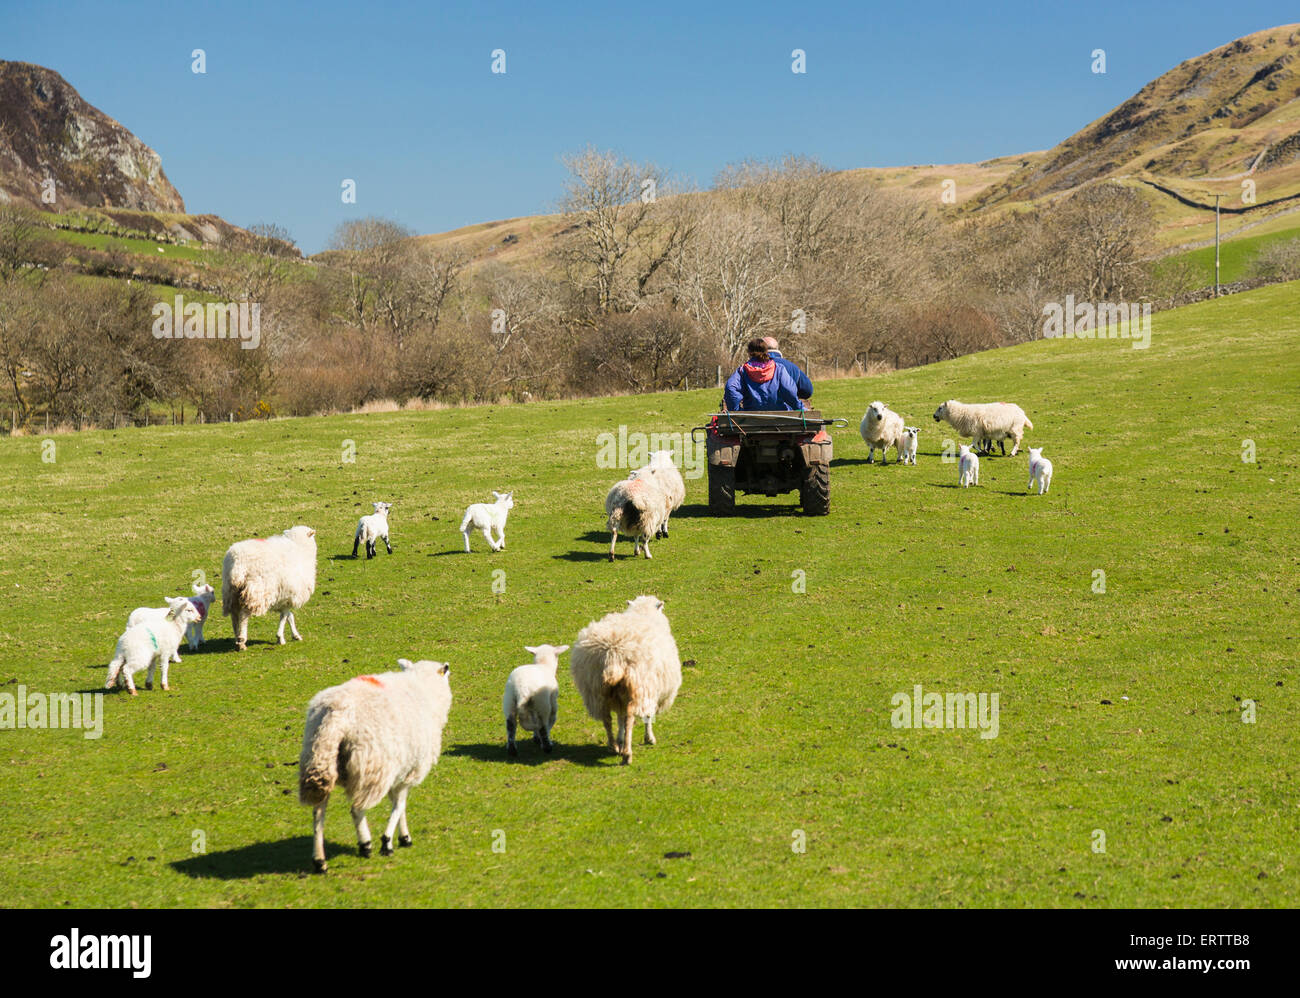 Schafe und Lämmer folgen Sie der Landwirt auf einem Quad in einem Feld, die Waliser Hill Farm, Snowdonia, Wales, Vereinigtes Königreich Landwirtschaft in den Frühling Stockfoto